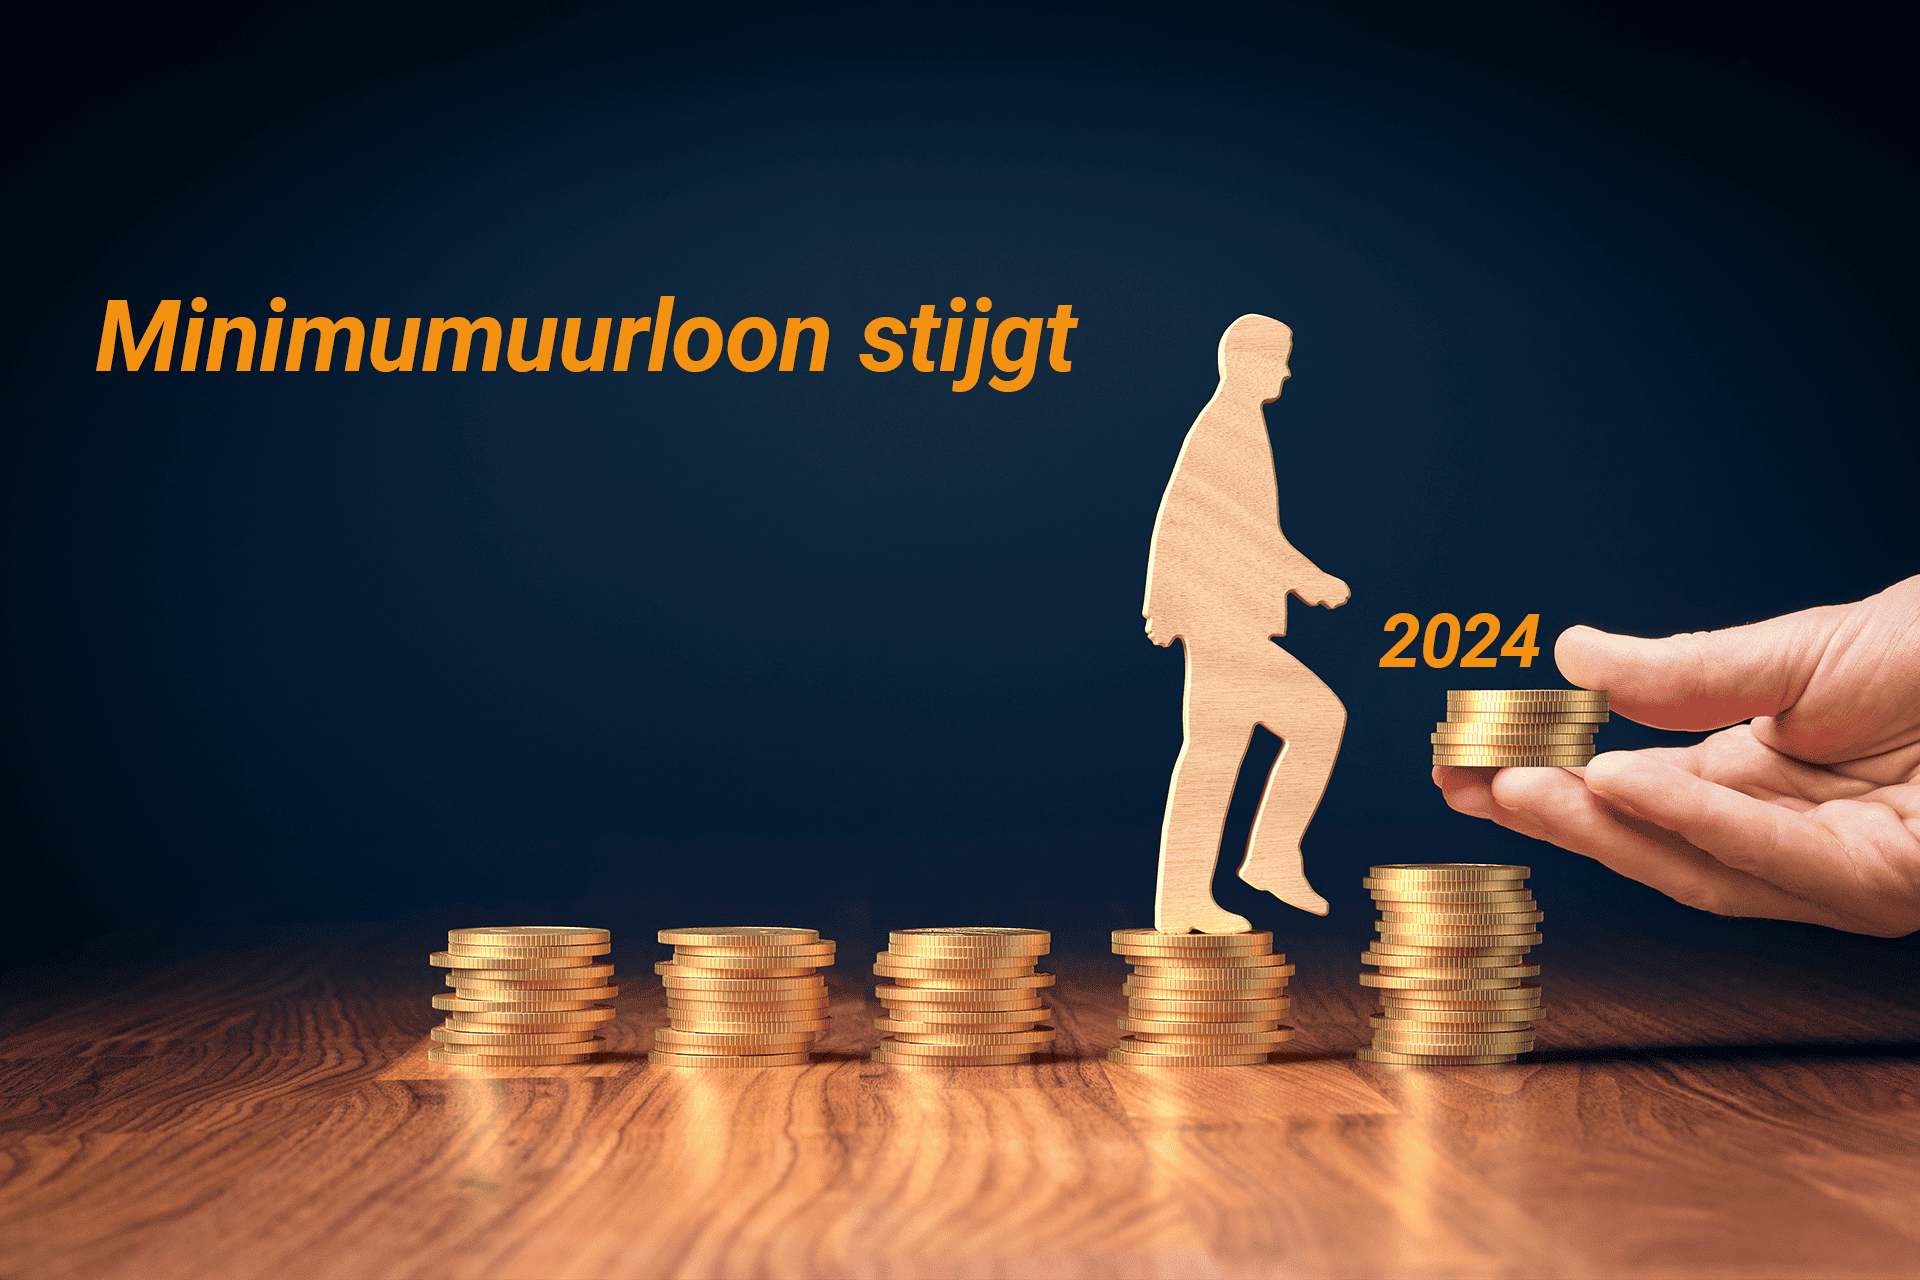 stijging minimumuurloon in 2024